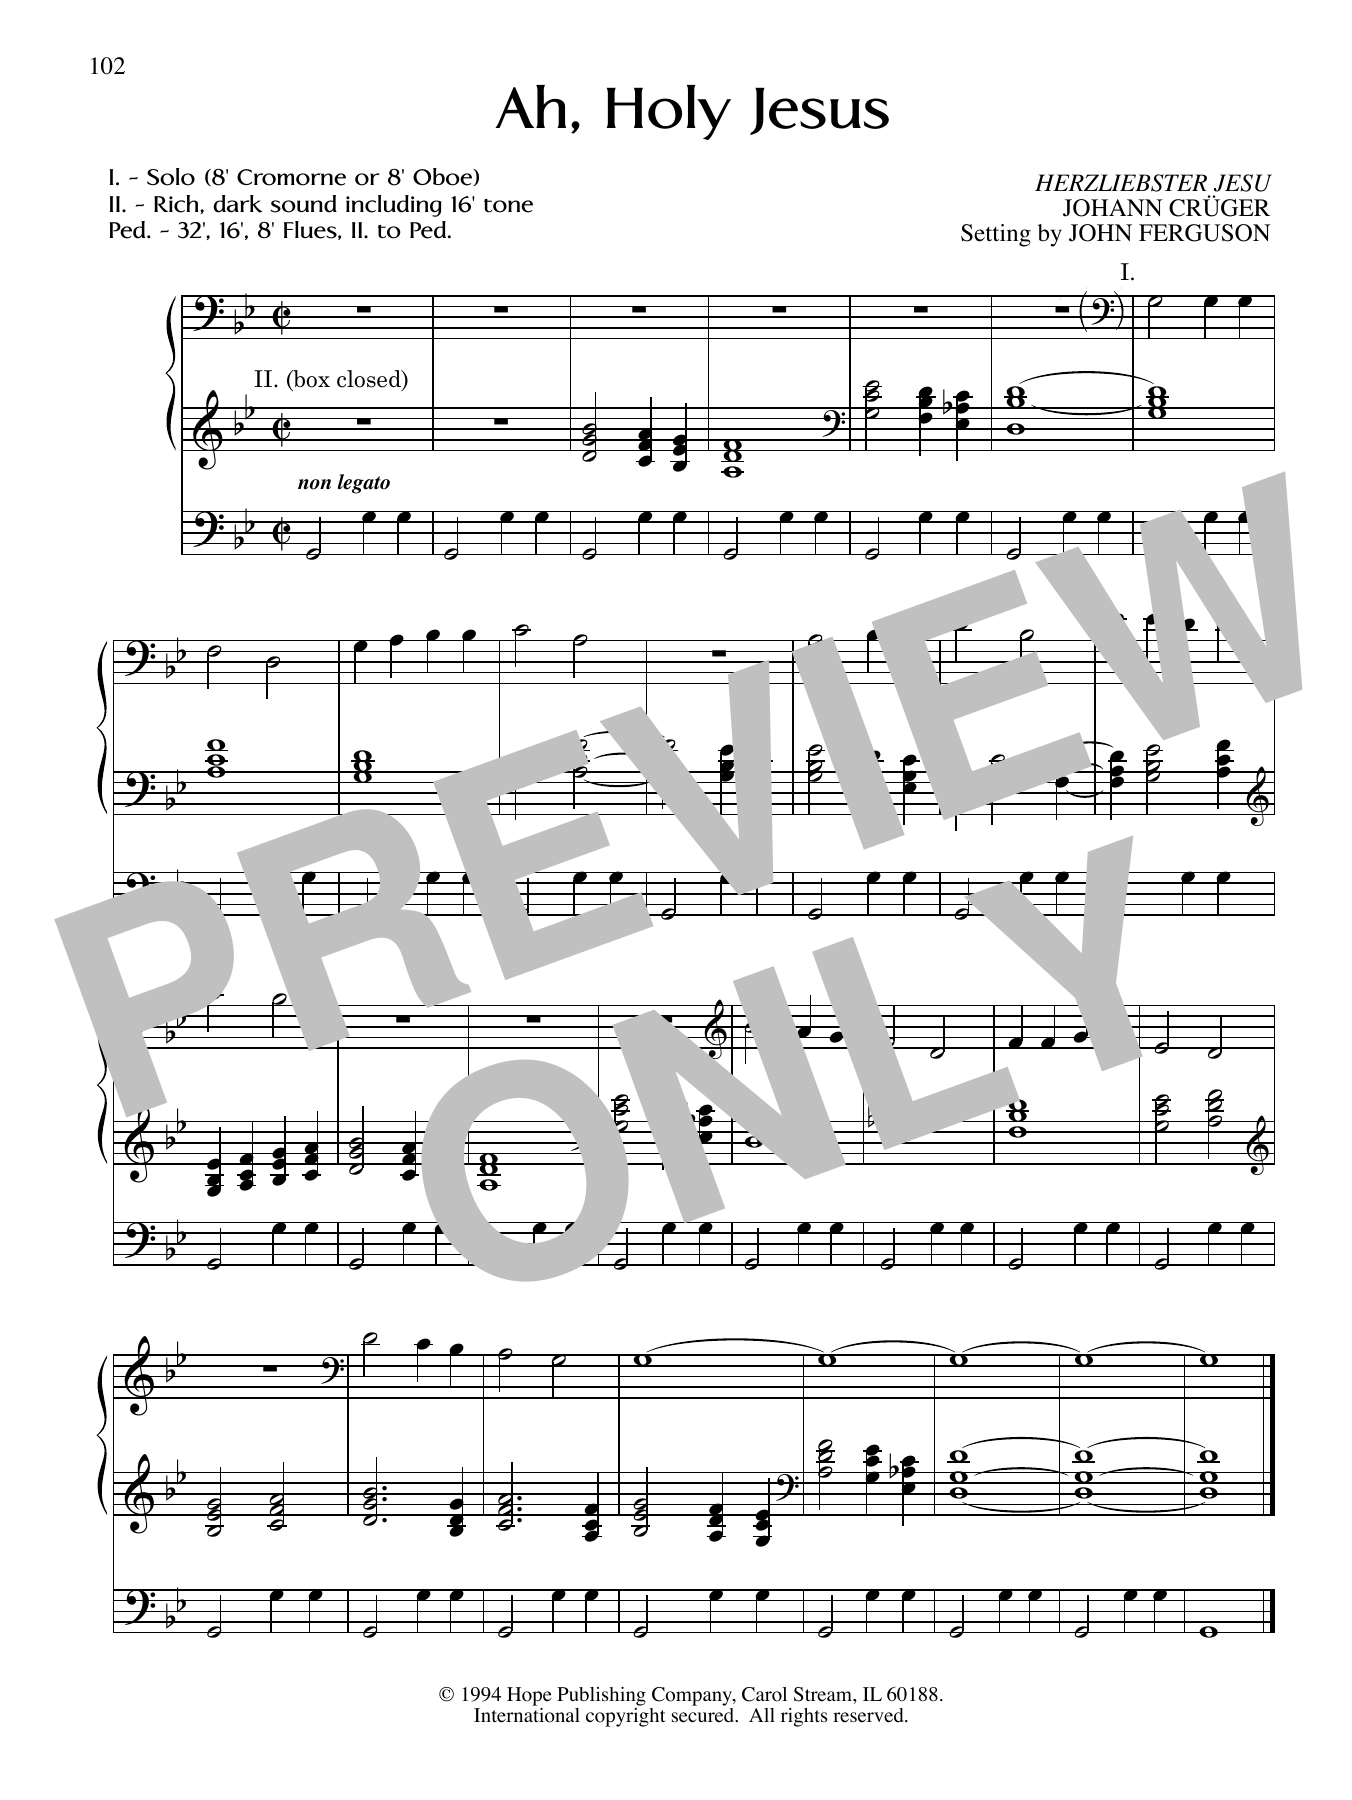 JOHN FERGUSON Ah, Holy Jesus Sheet Music Notes & Chords for Organ - Download or Print PDF